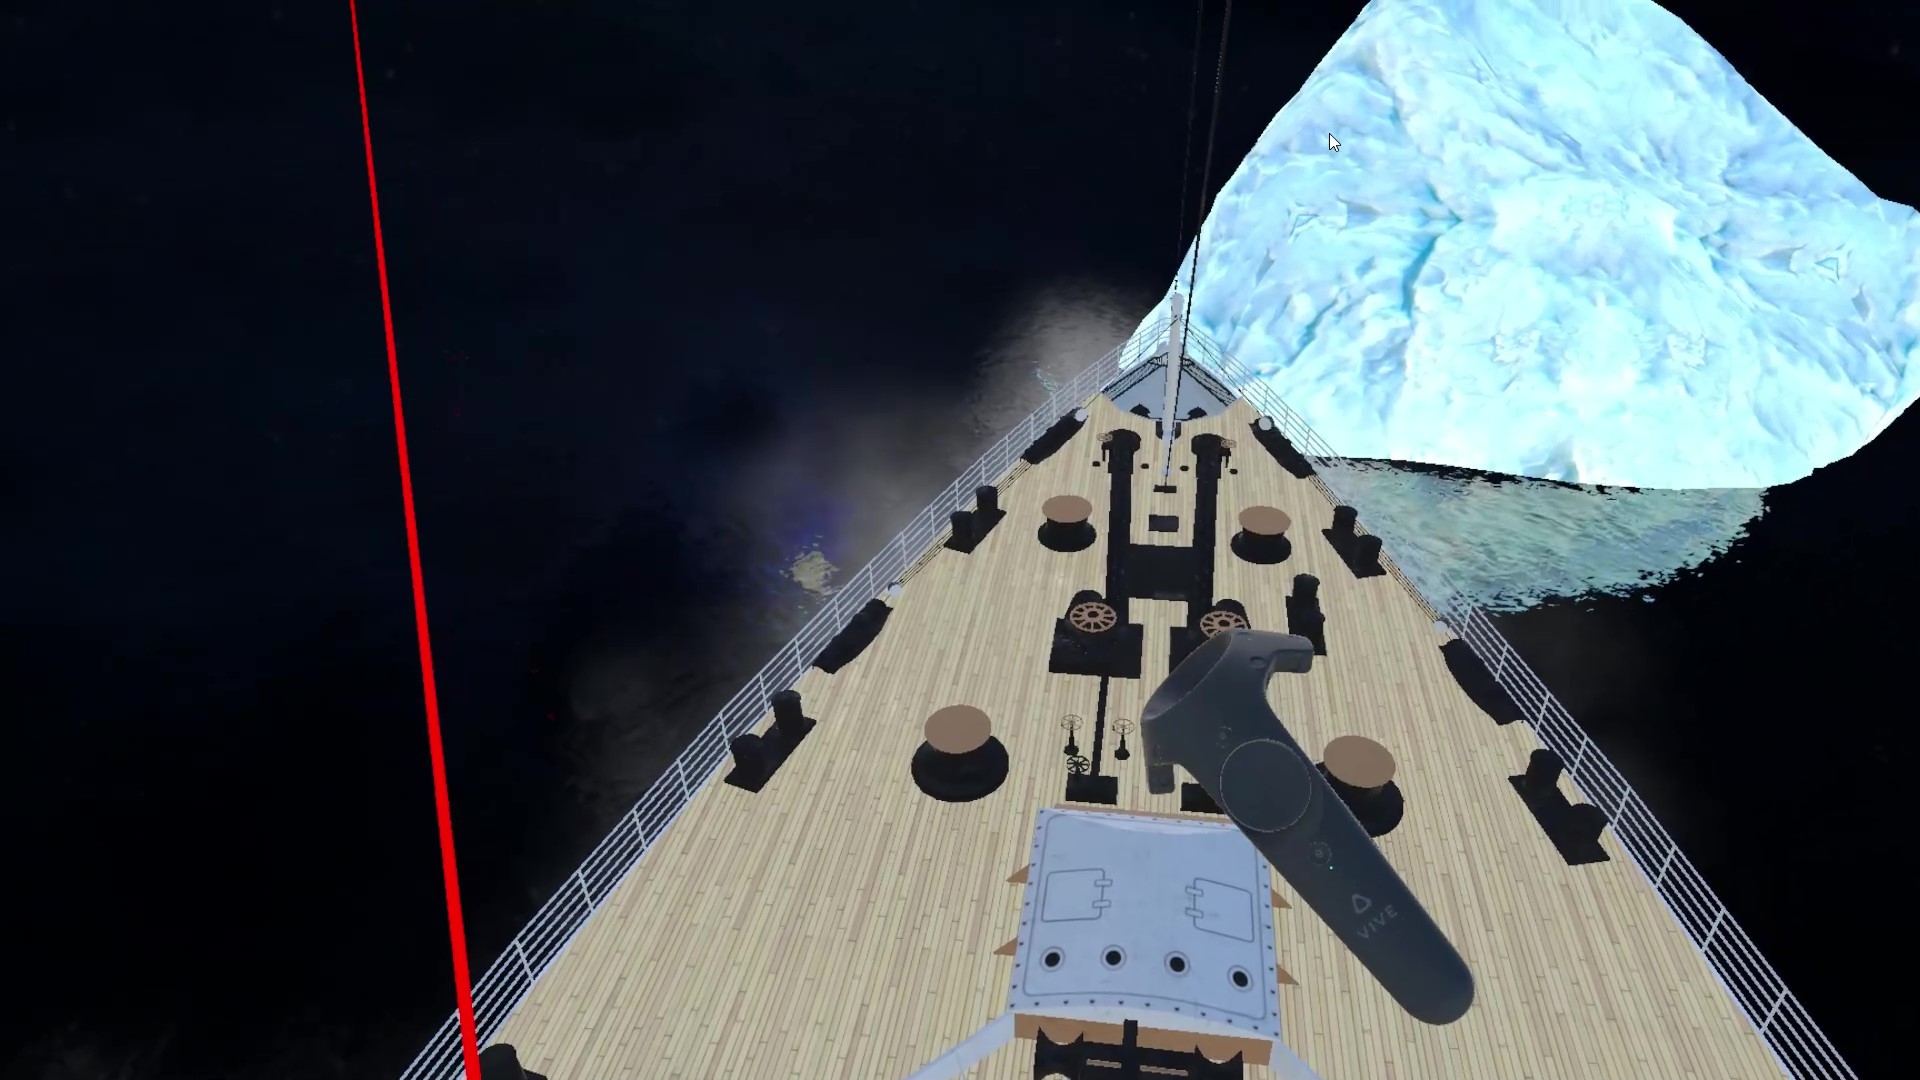 VR Titanic - Find the Rose screenshot